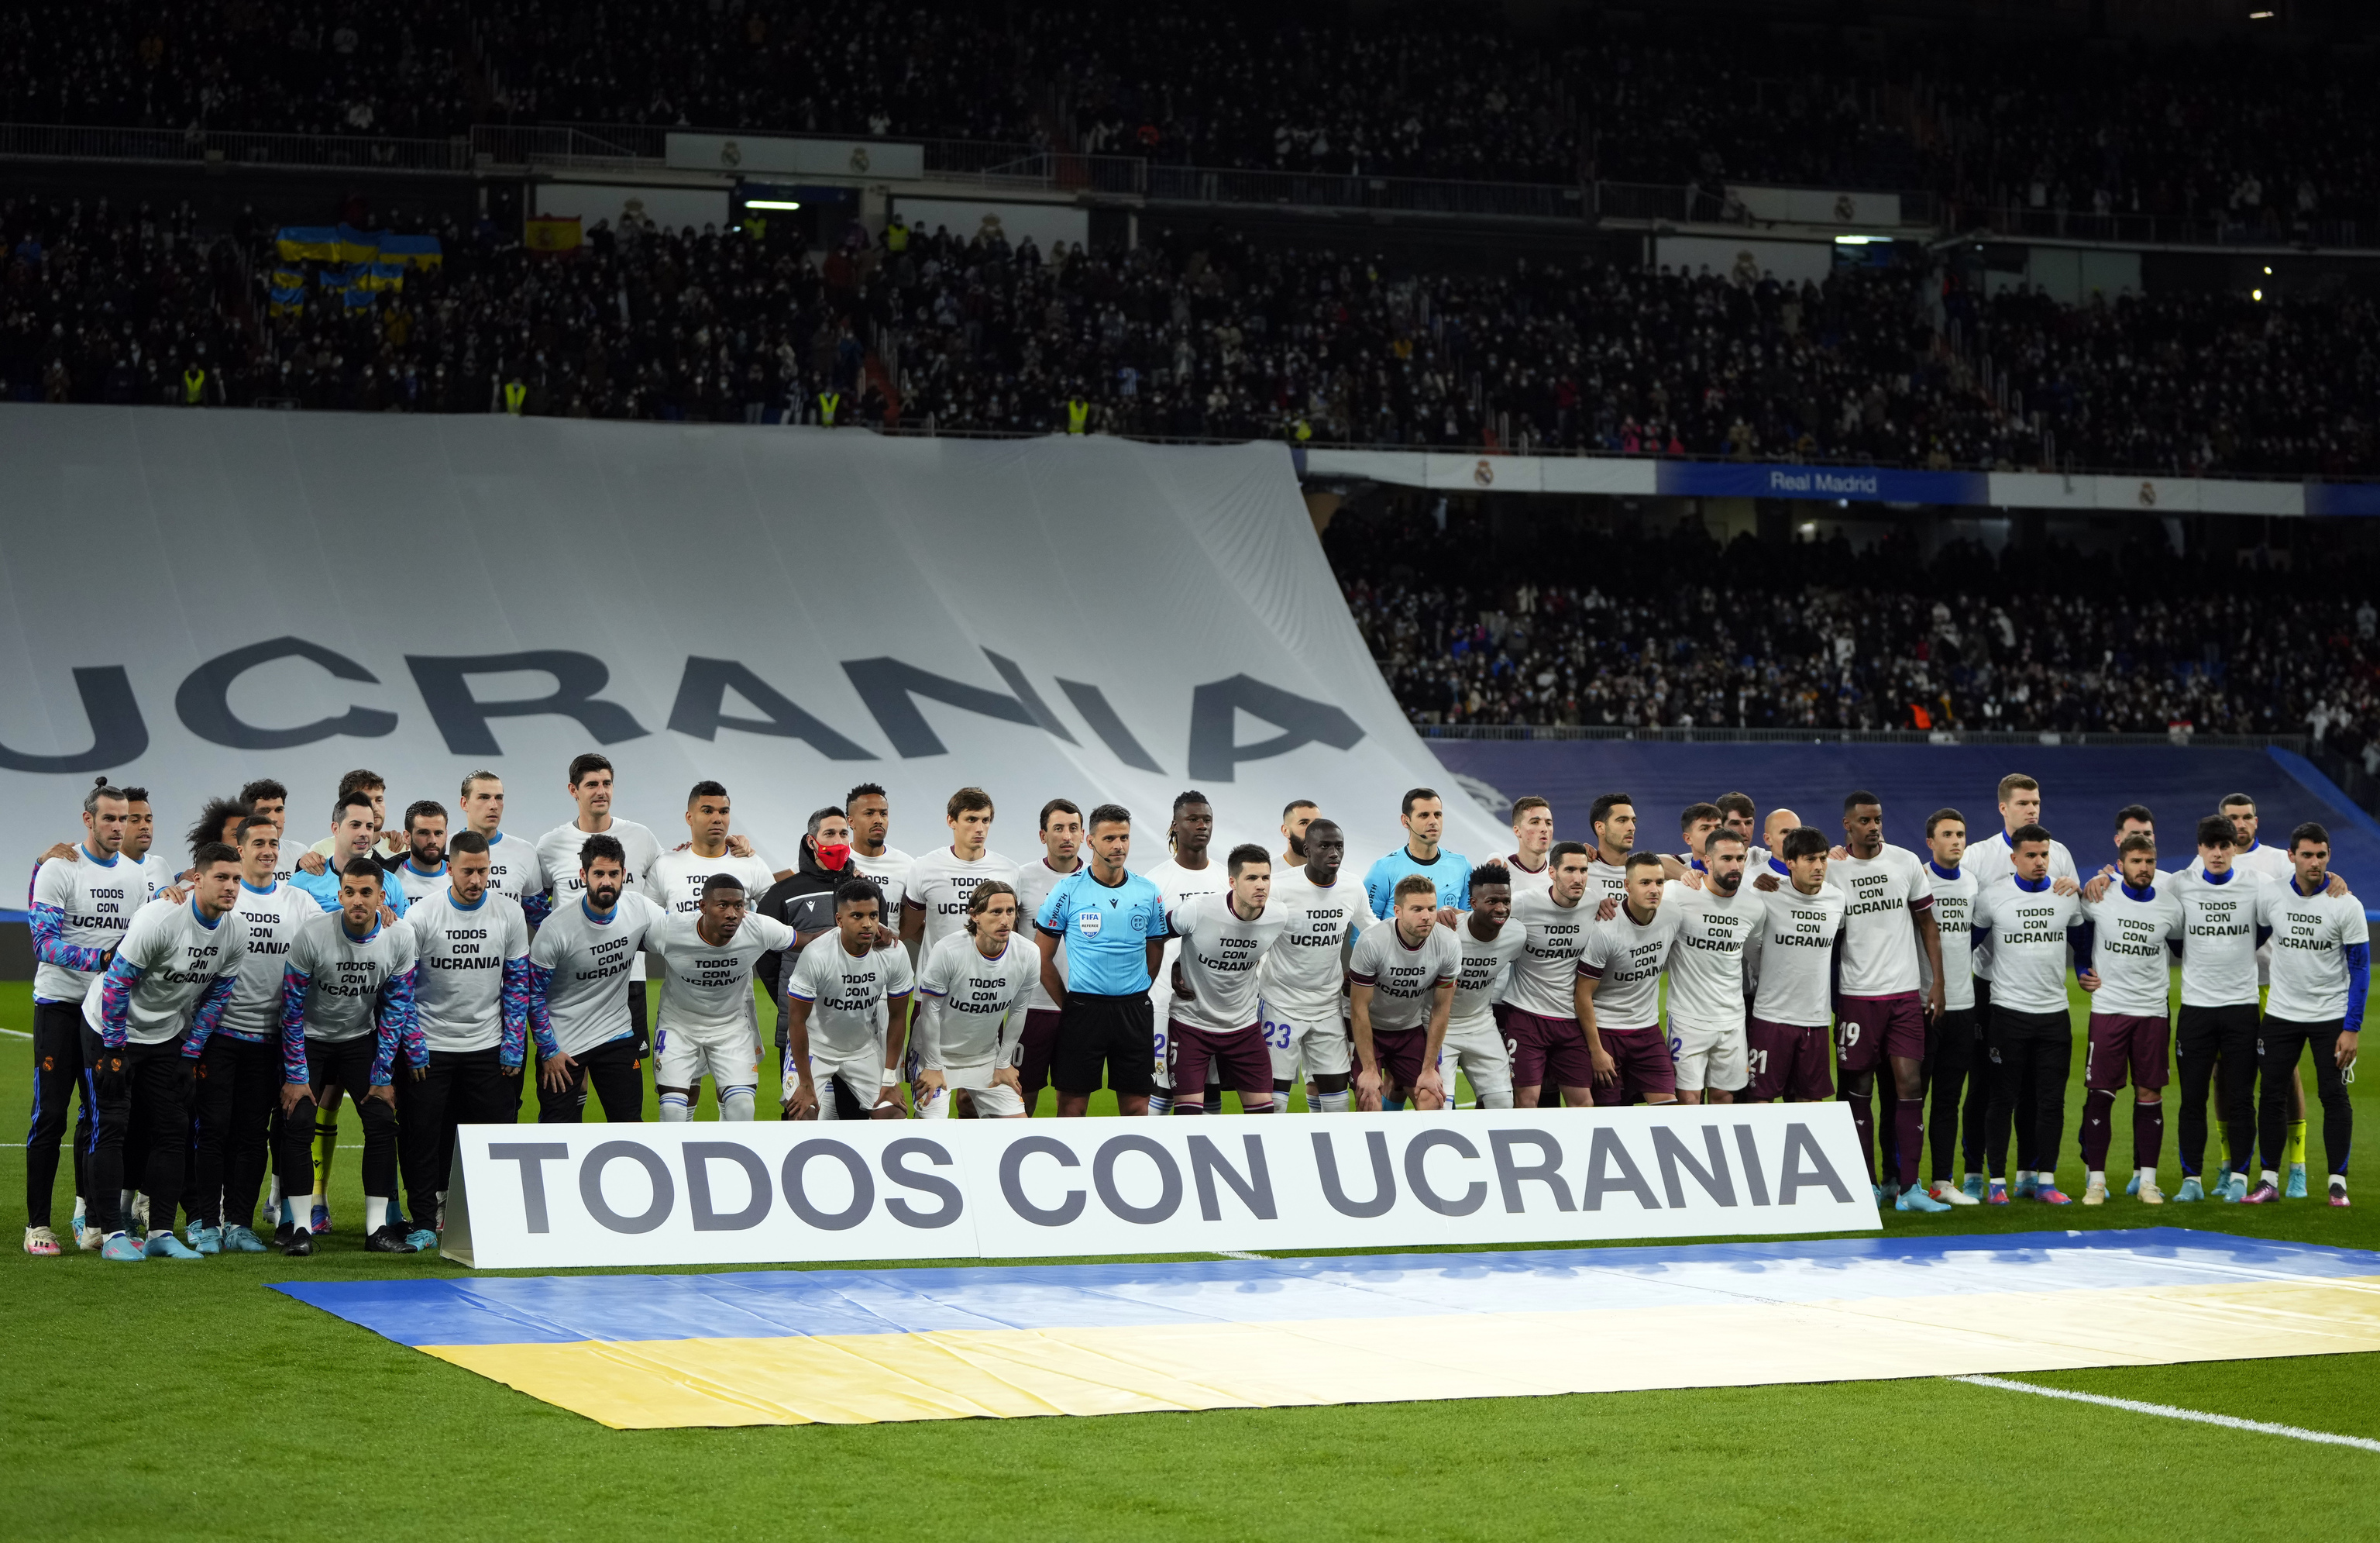 Jugadores del Madrid y la Real, durante el homenaje a Ucrania.